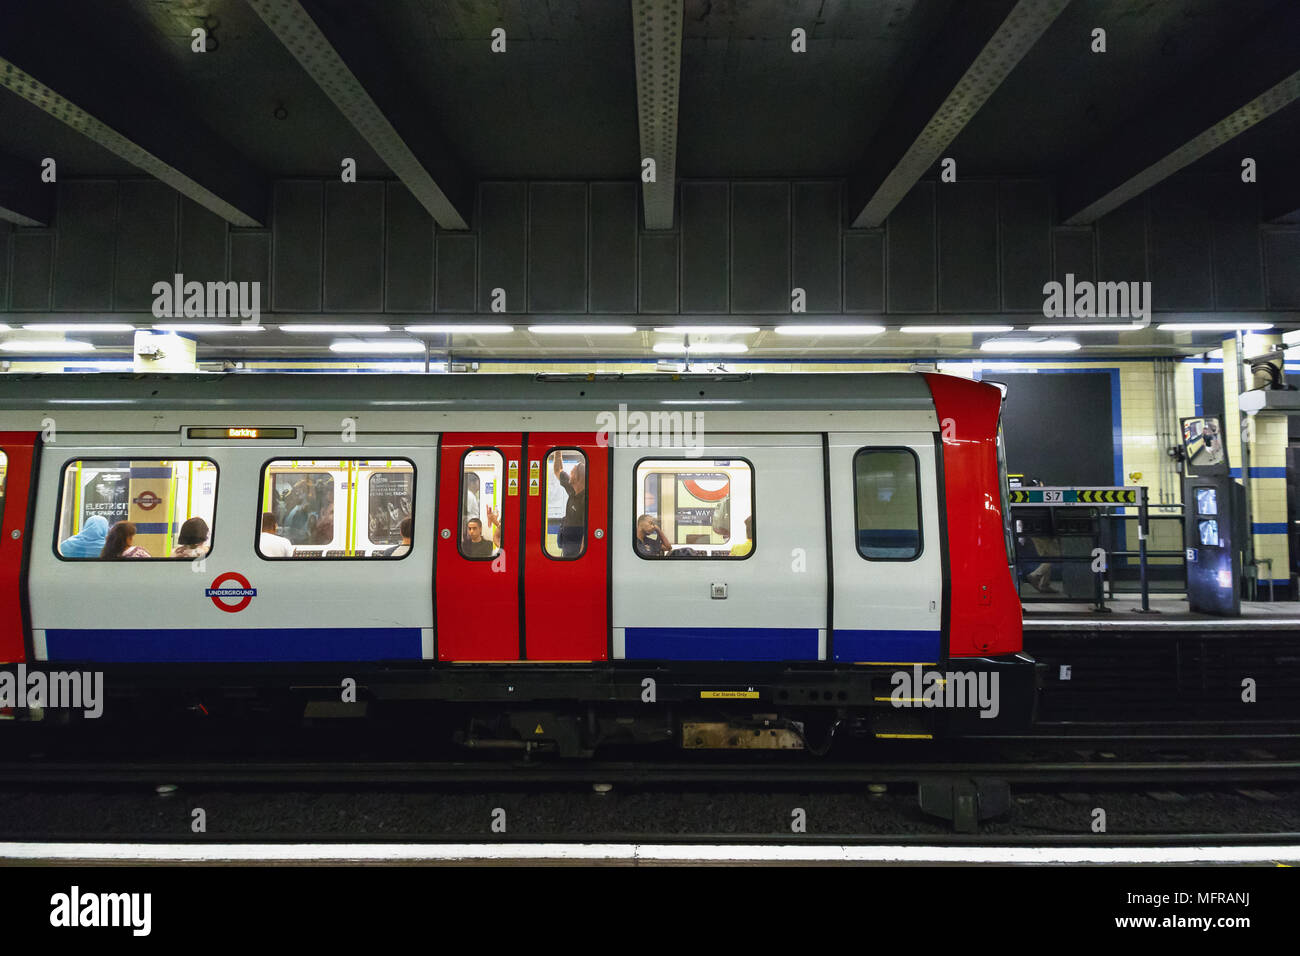 Londres, Royaume-Uni - 04 mai 2018 - Trains sur le point de partir de la station de métro Aldgate East Banque D'Images